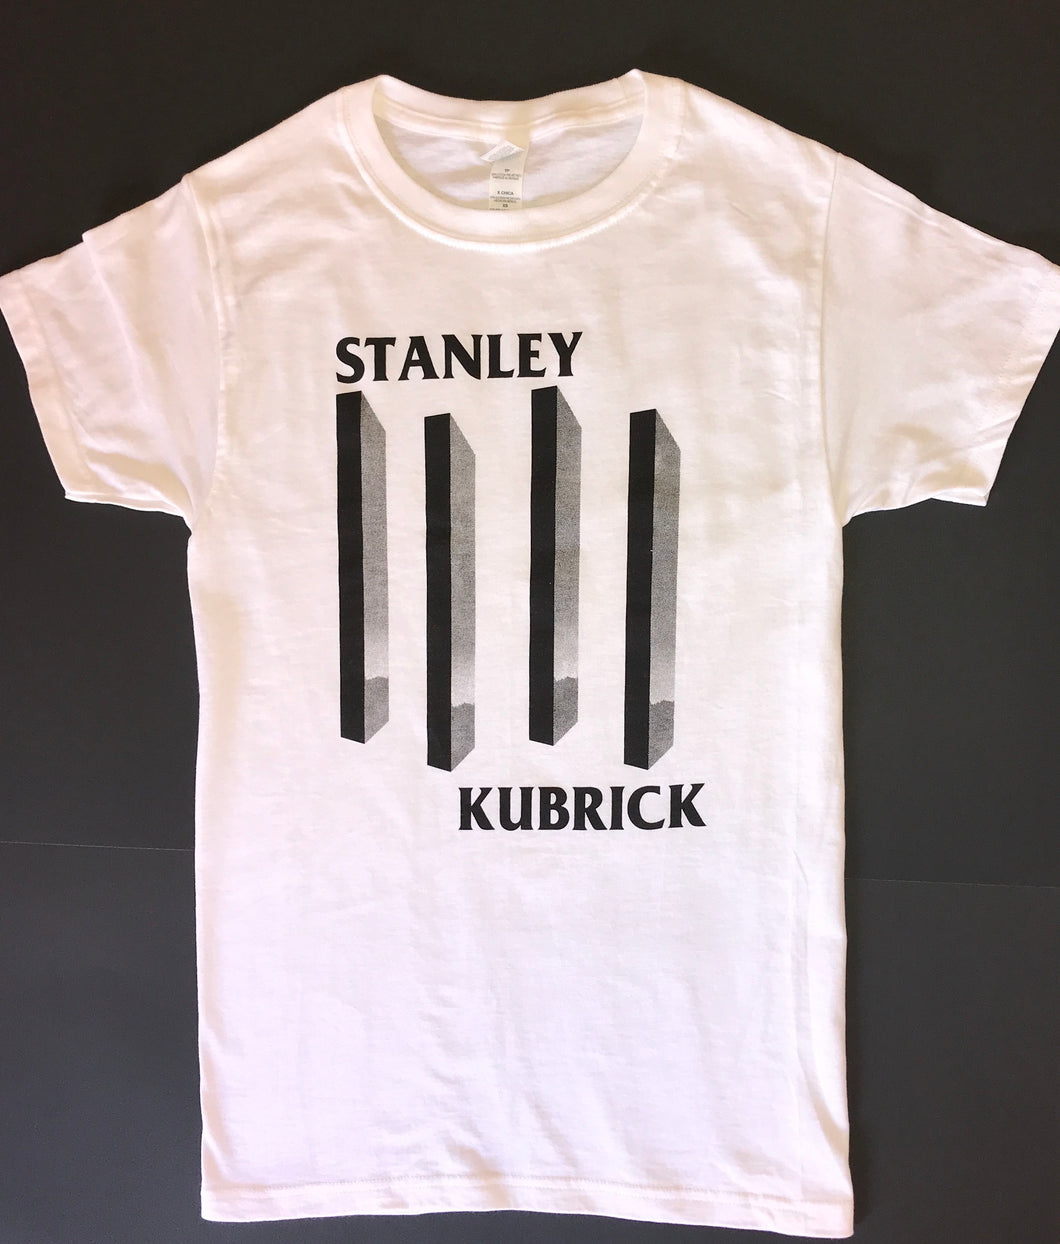 Stanley Kubrick shirt